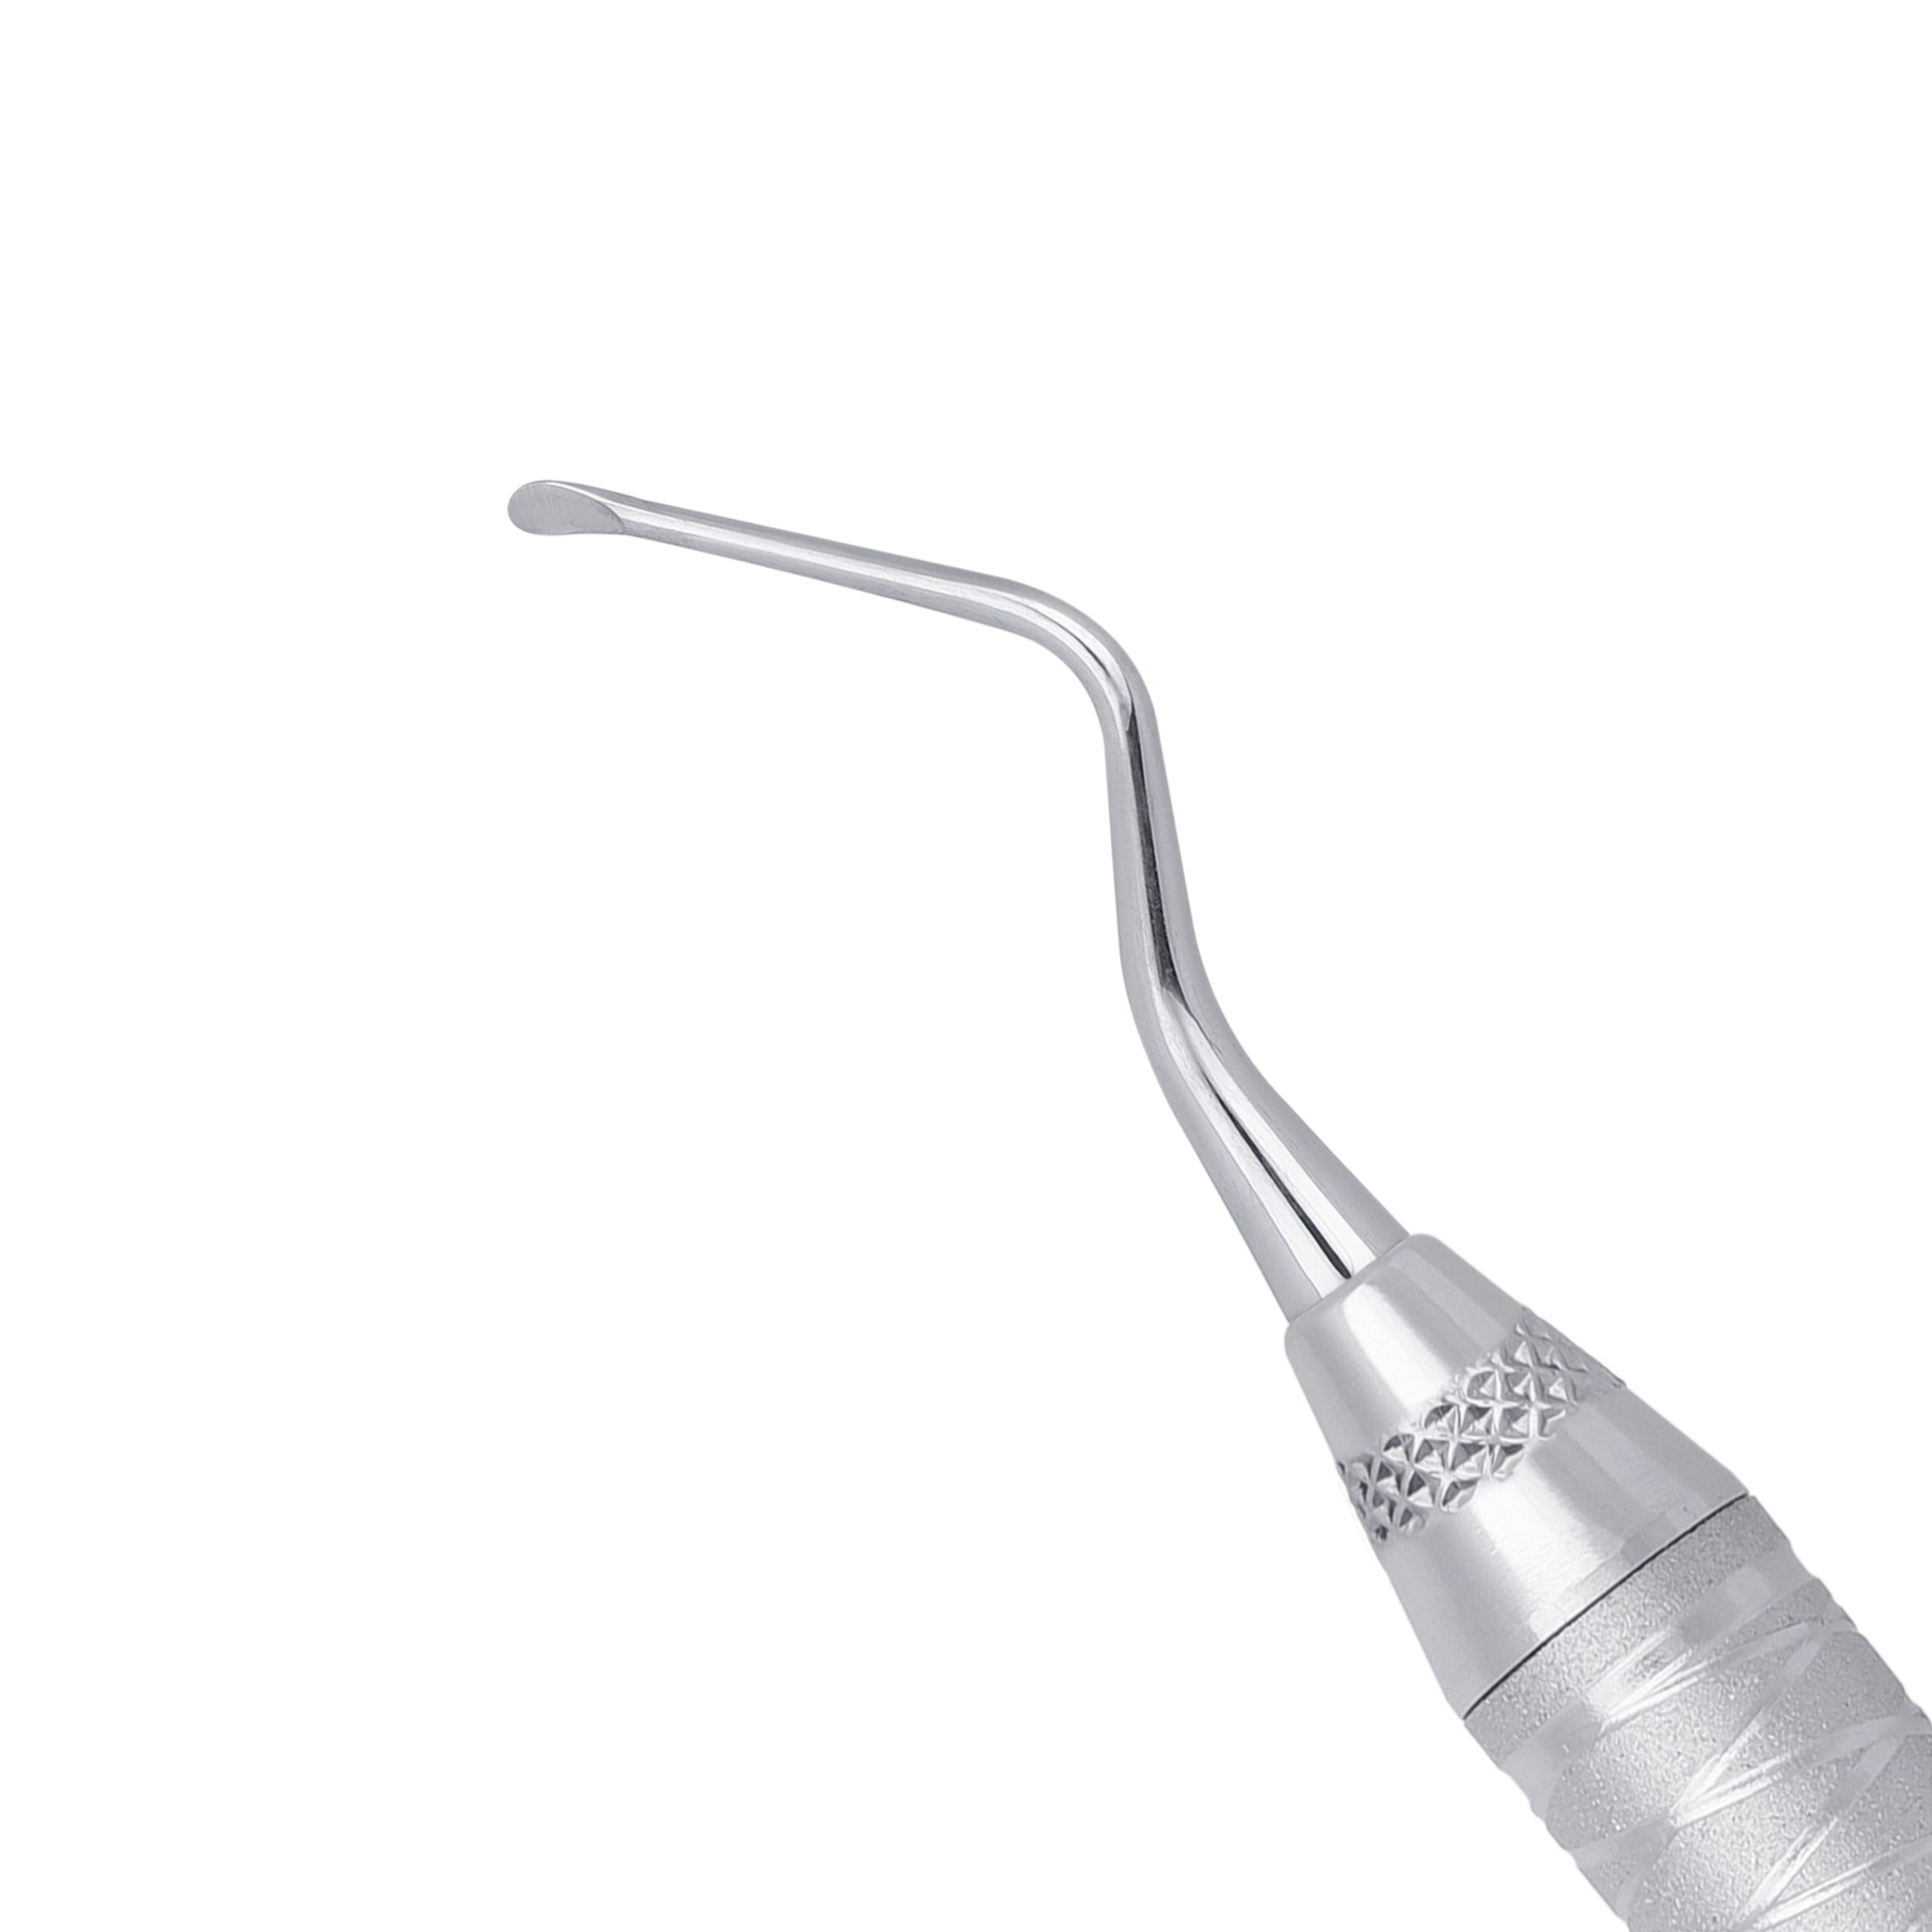 84 Lucas Spoon Shape Surgical Curette, 2MM - HiTeck Medical Instruments